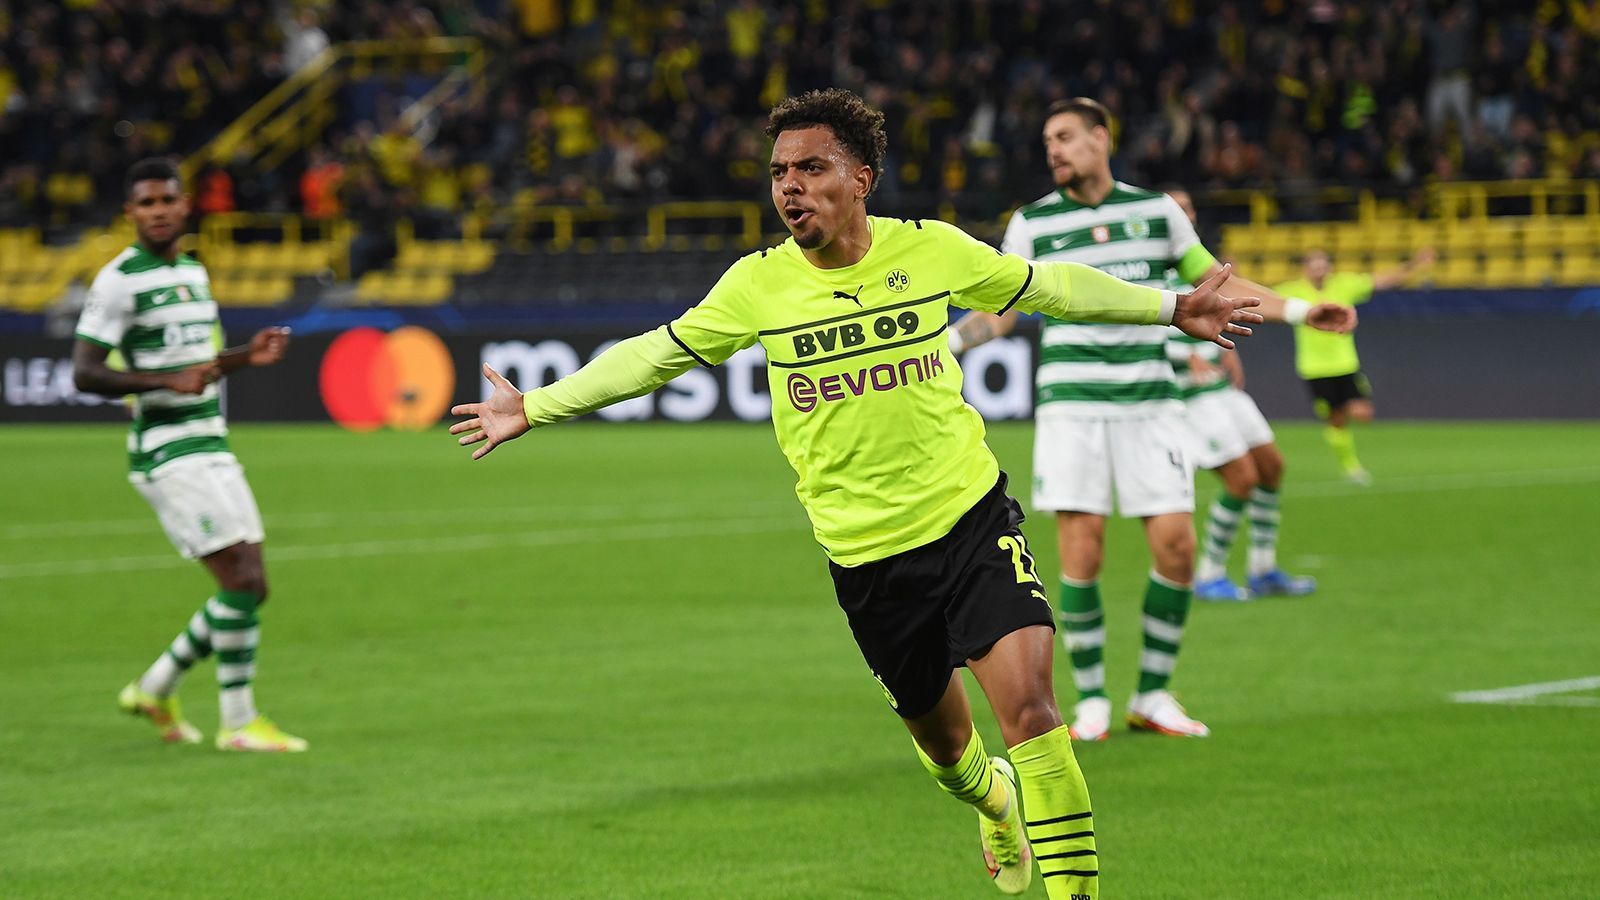 
                <strong>Dortmund bezwingt Sporting: Die BVB-Stars in der Einzelkritik</strong><br>
                Borussia Dortmund gewinnt auch das zweite Champions-League-Spiel der Saison. Gegen Sporting Lissabon reicht letztlich ein Tor von Donyell Malen. ran bewertet die Leistungen der BVB-Stars.
              